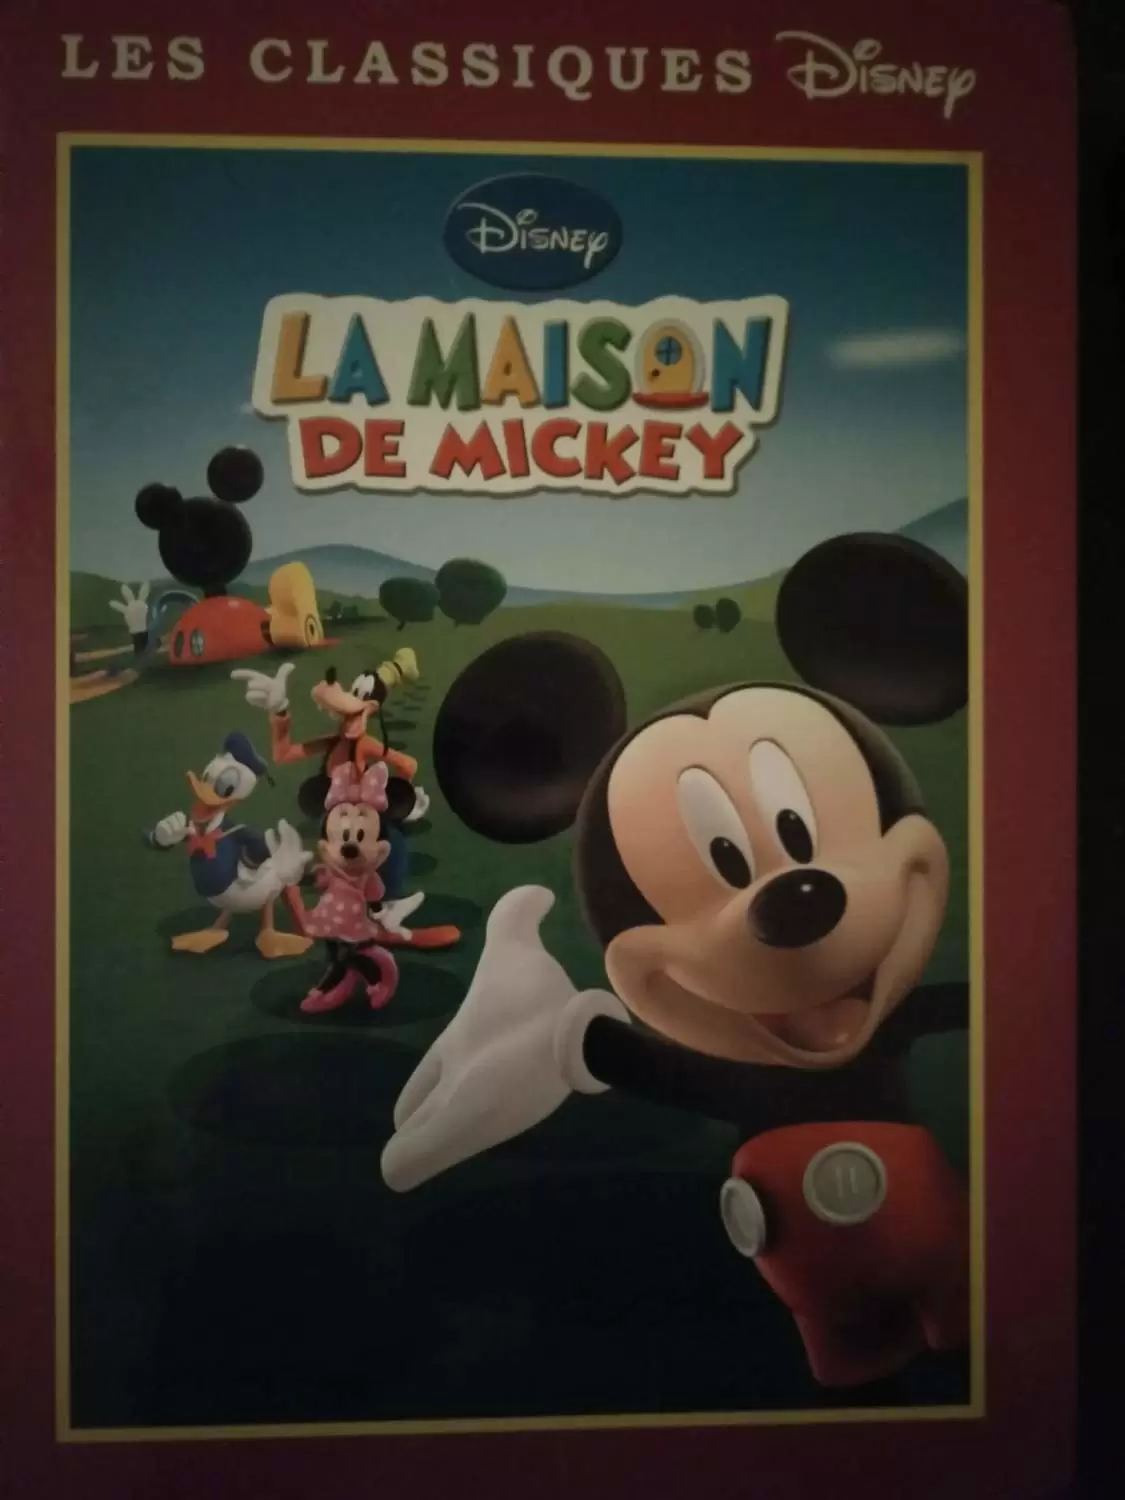 Les Classiques Disney - Edition France Loisirs - La maison de mickey